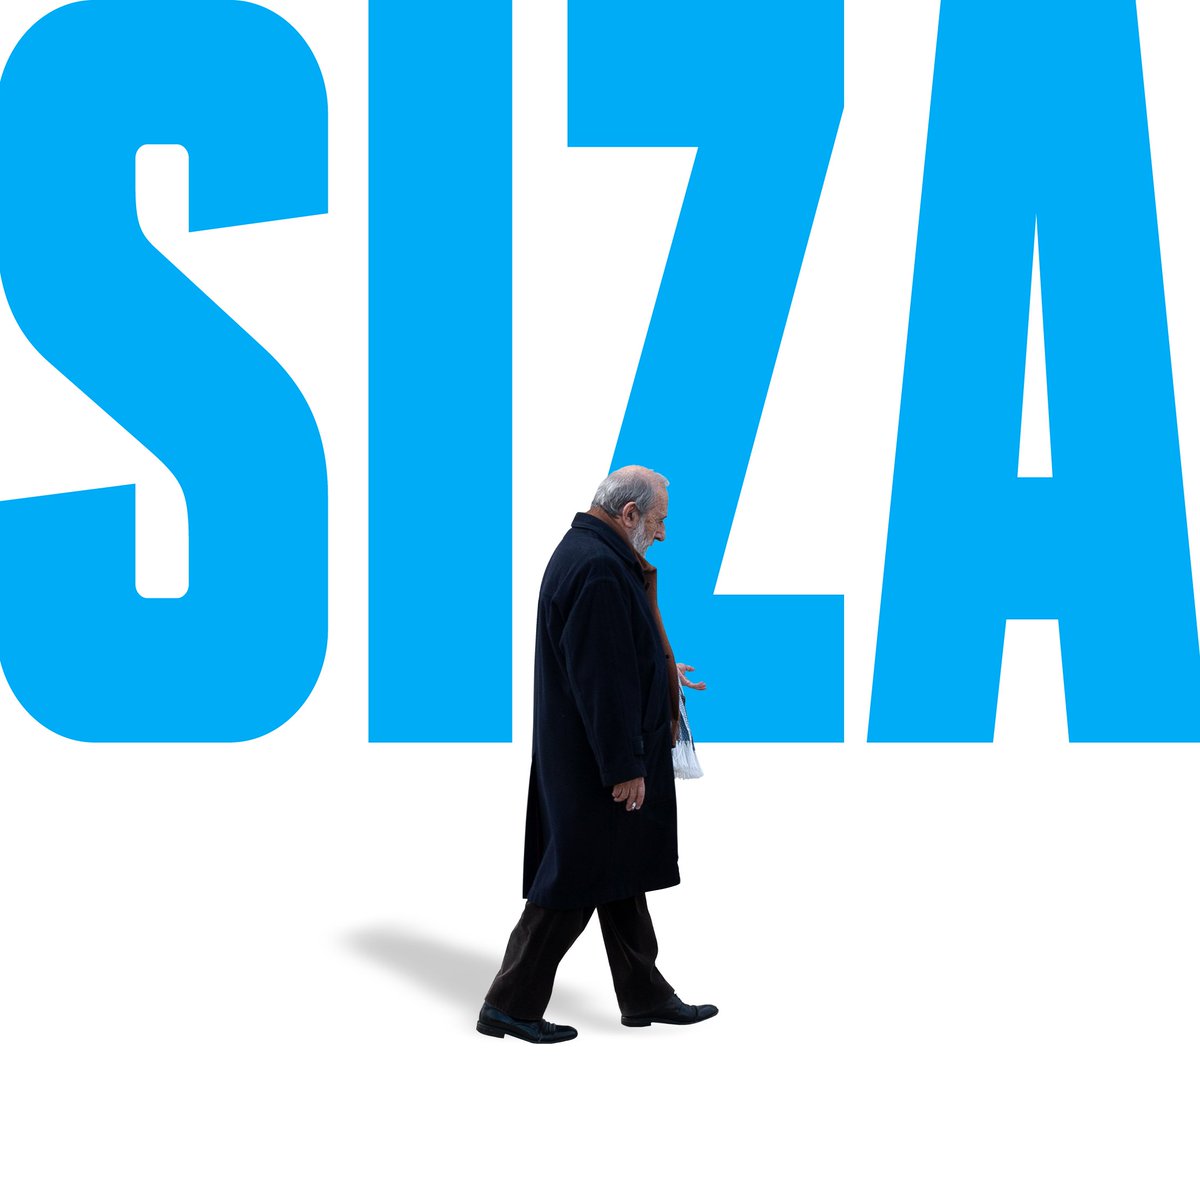 'Siza' inaugura no dia 17 de maio! A nossa nova exposição é dedicada à obra de um dos grandes nomes vivos da arquitetura e urbanismo mundiais, Álvaro Siza Vieira.